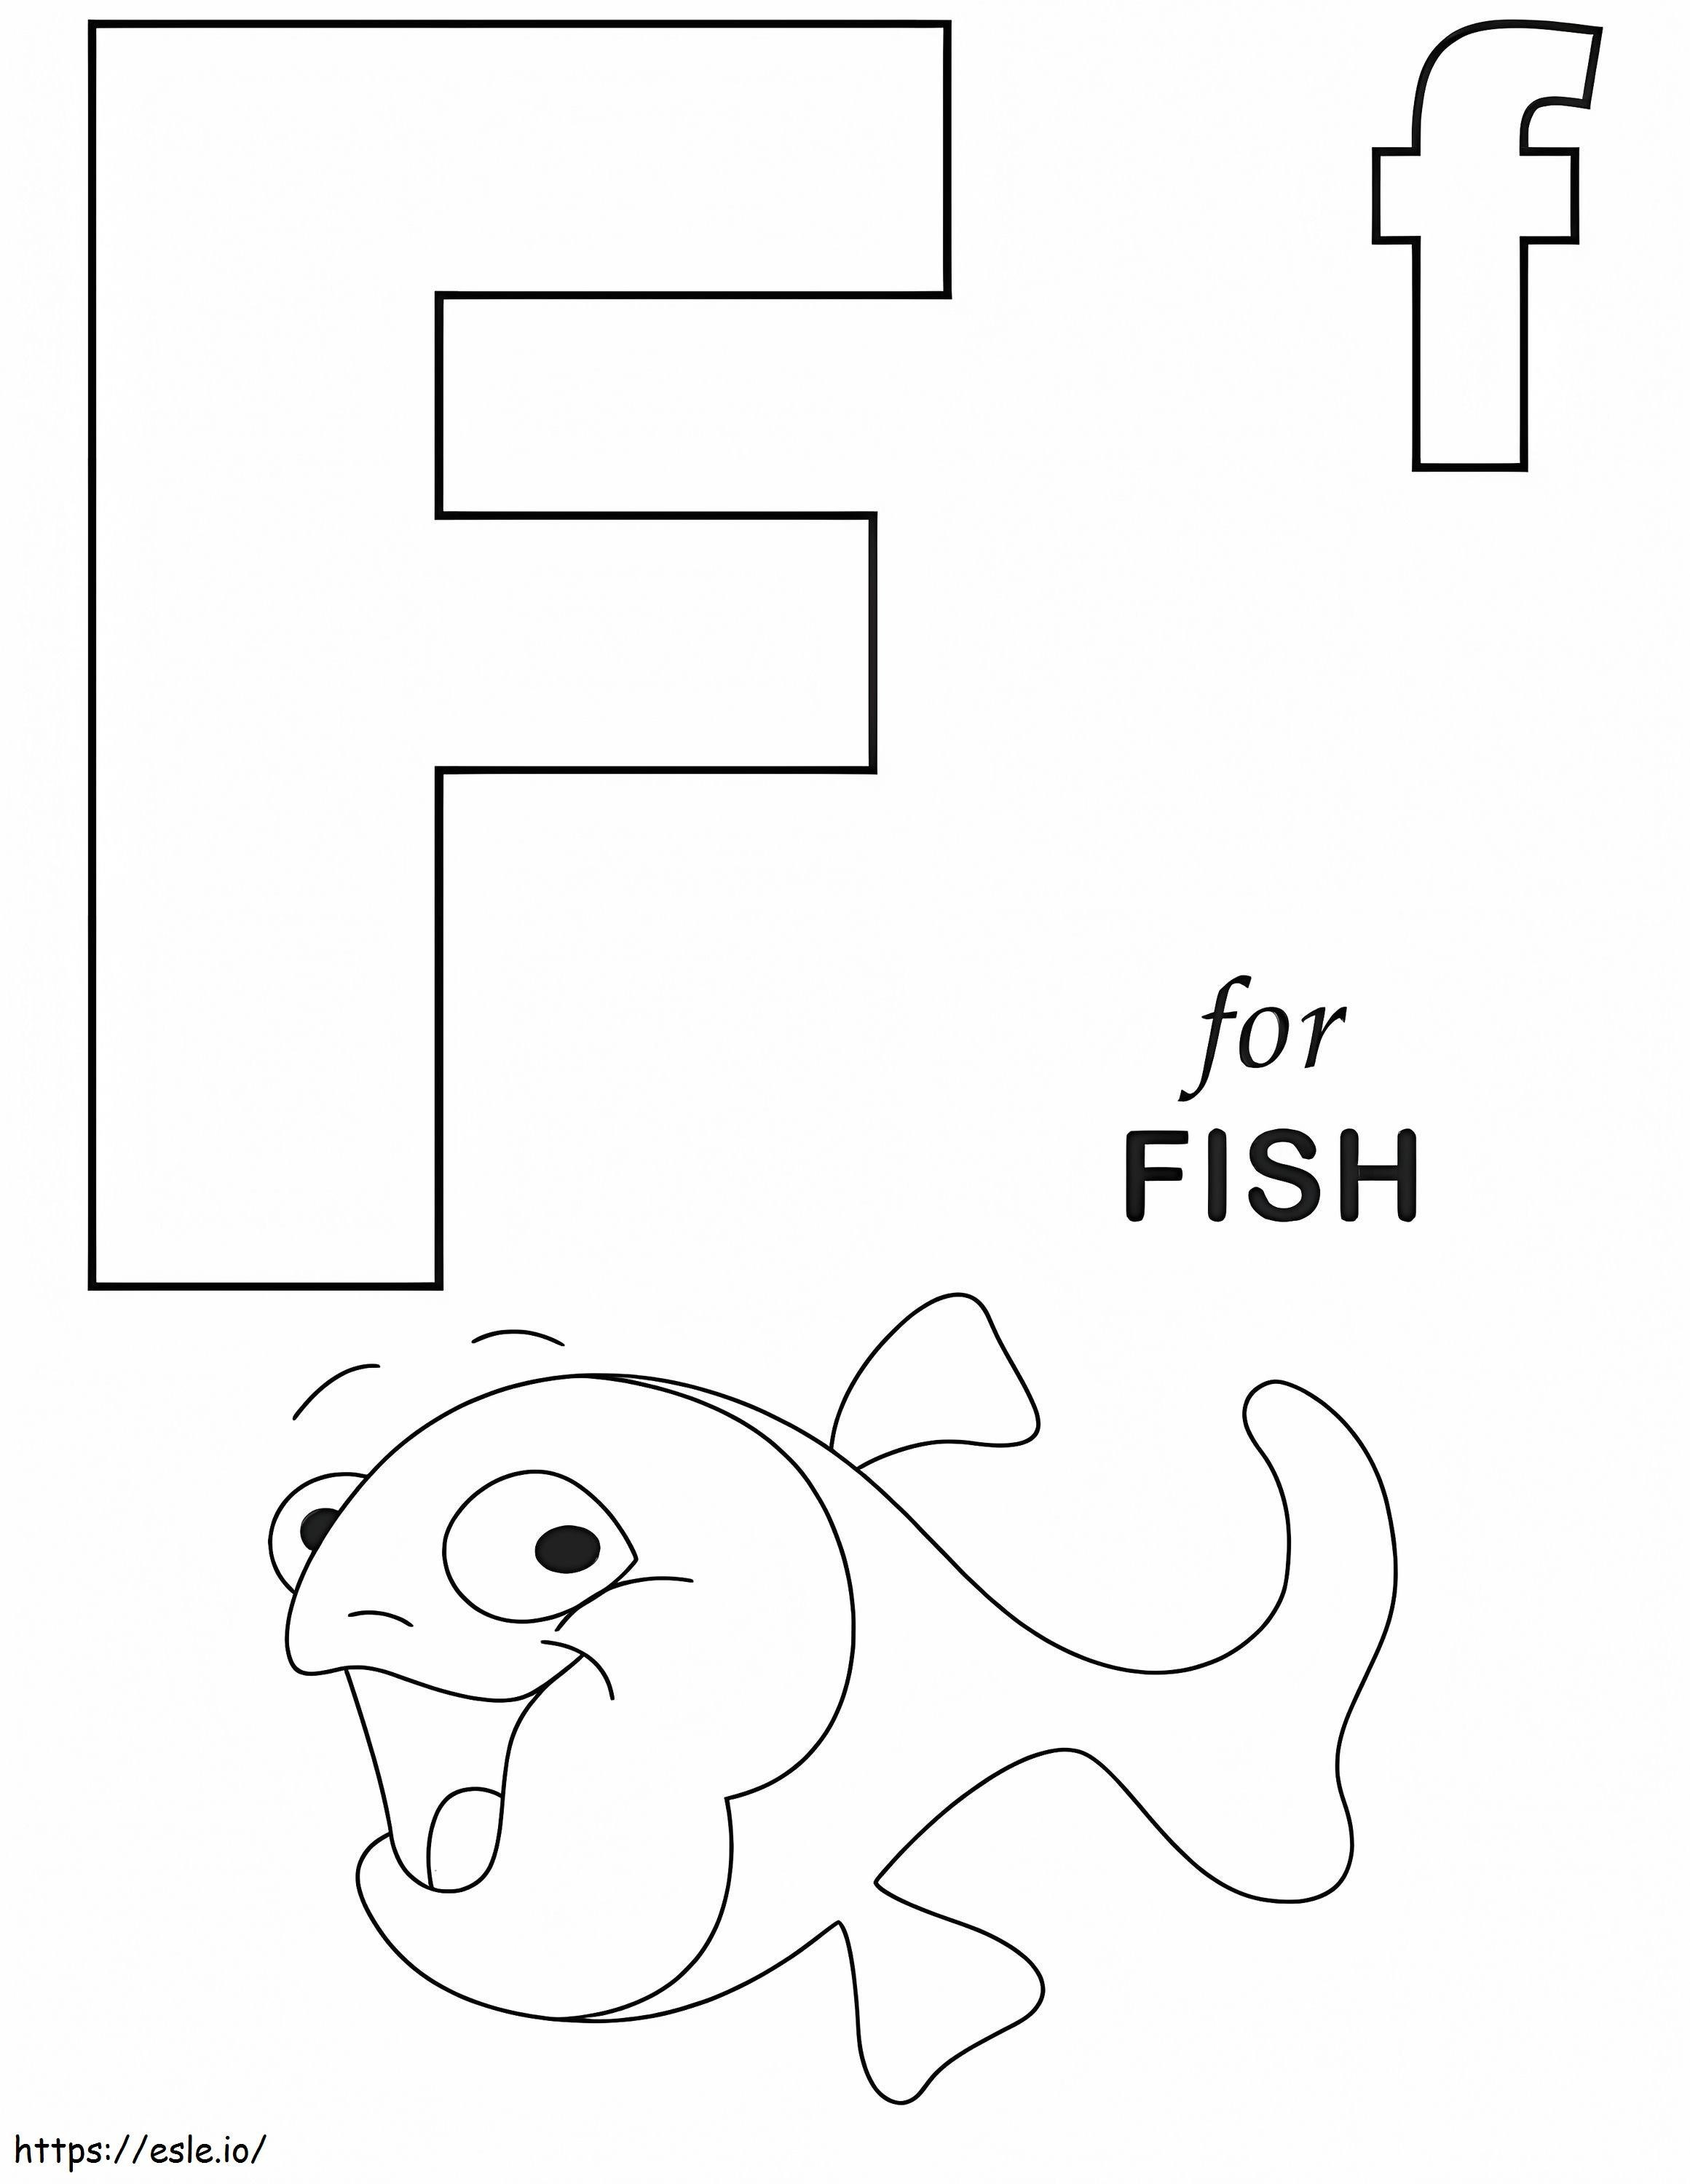 Fischbuchstabe F ausmalbilder